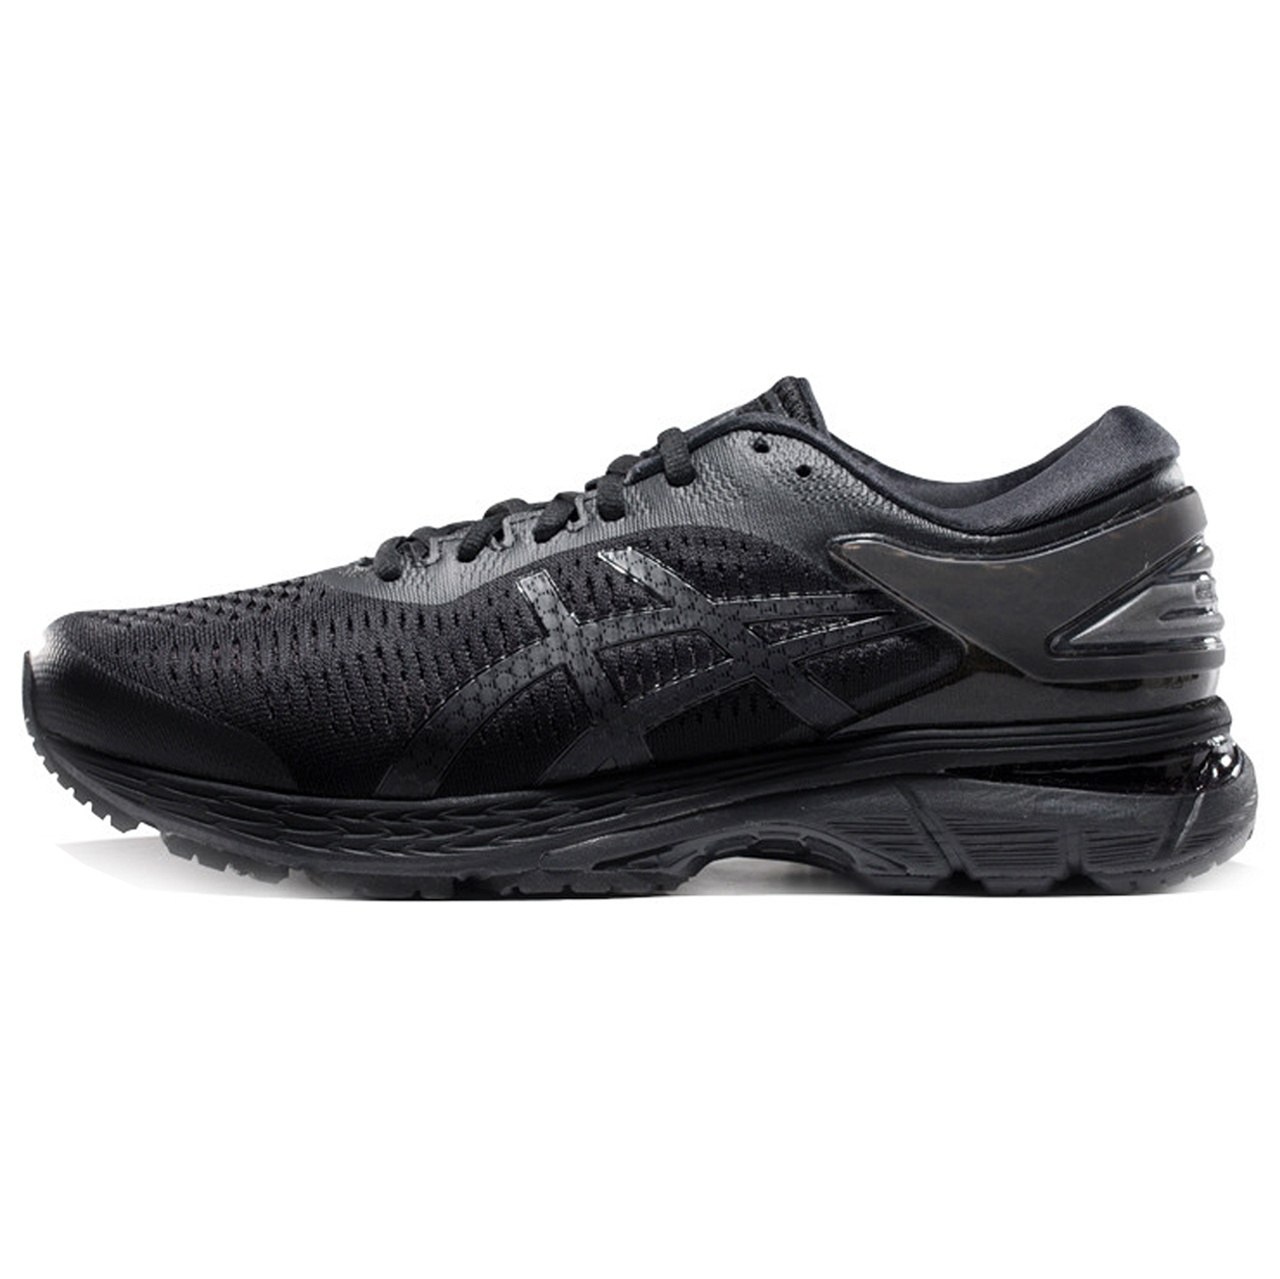  کفش مخصوص دویدن مردانه اسیکس مدل   kayano کد T8756-09